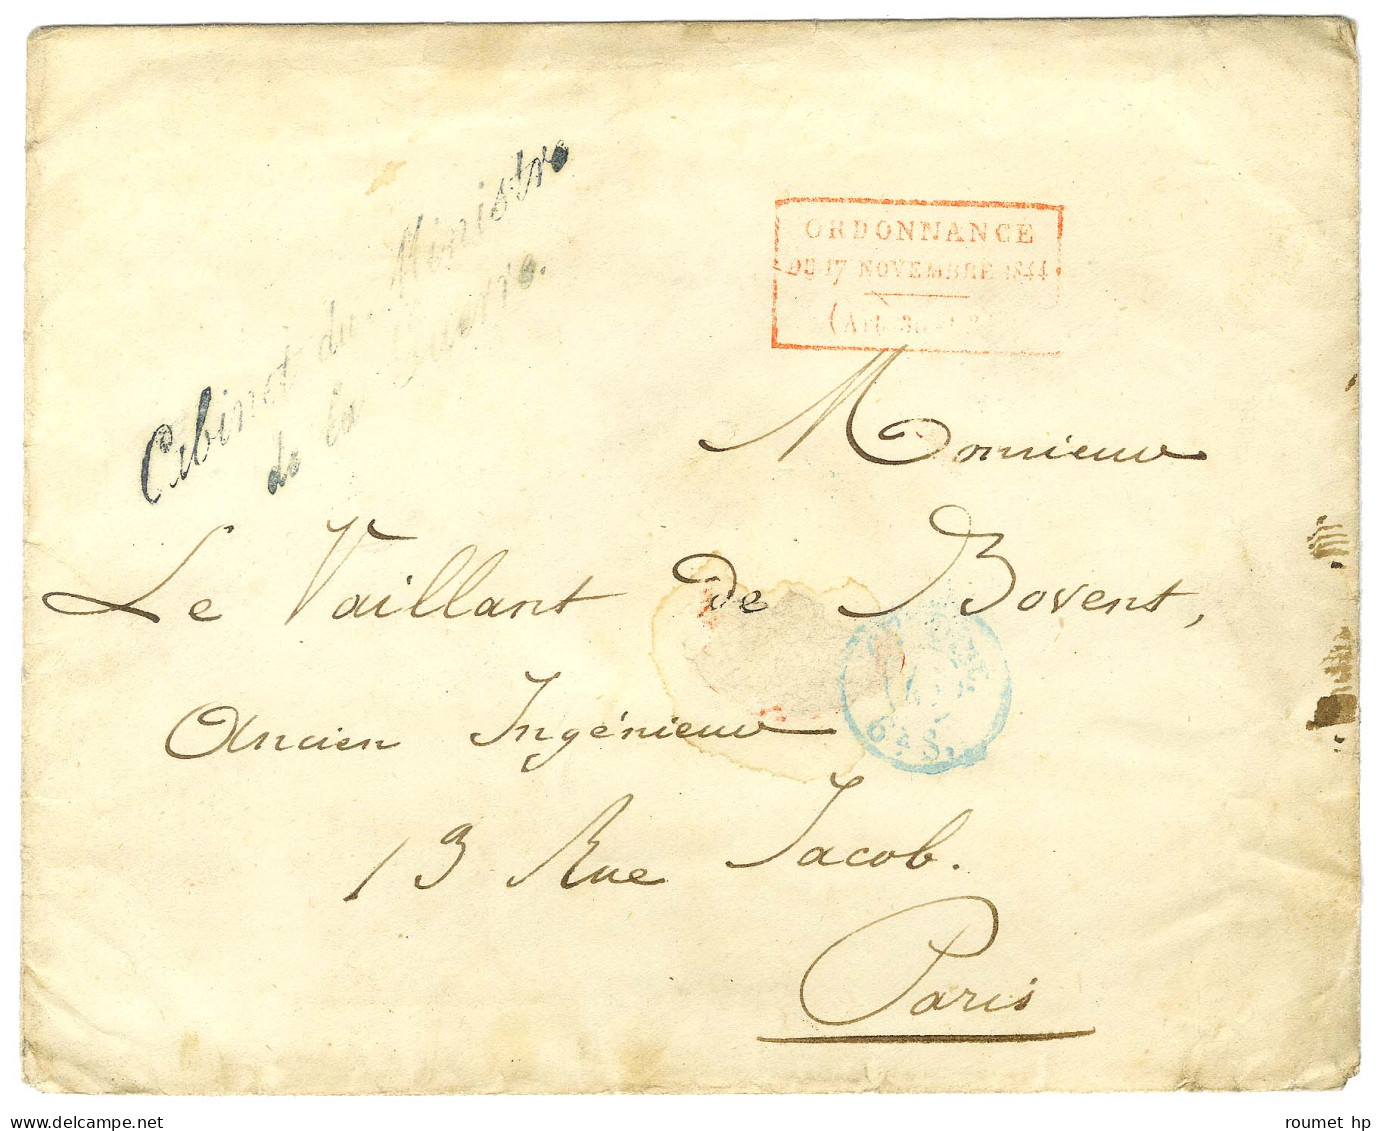 Enveloppe Sans Texte Datée 1825 Adressée à Paris. Au Recto, Cachet Rouge Encadrée De L'Ordonnance. - TB. - Lettres Civiles En Franchise